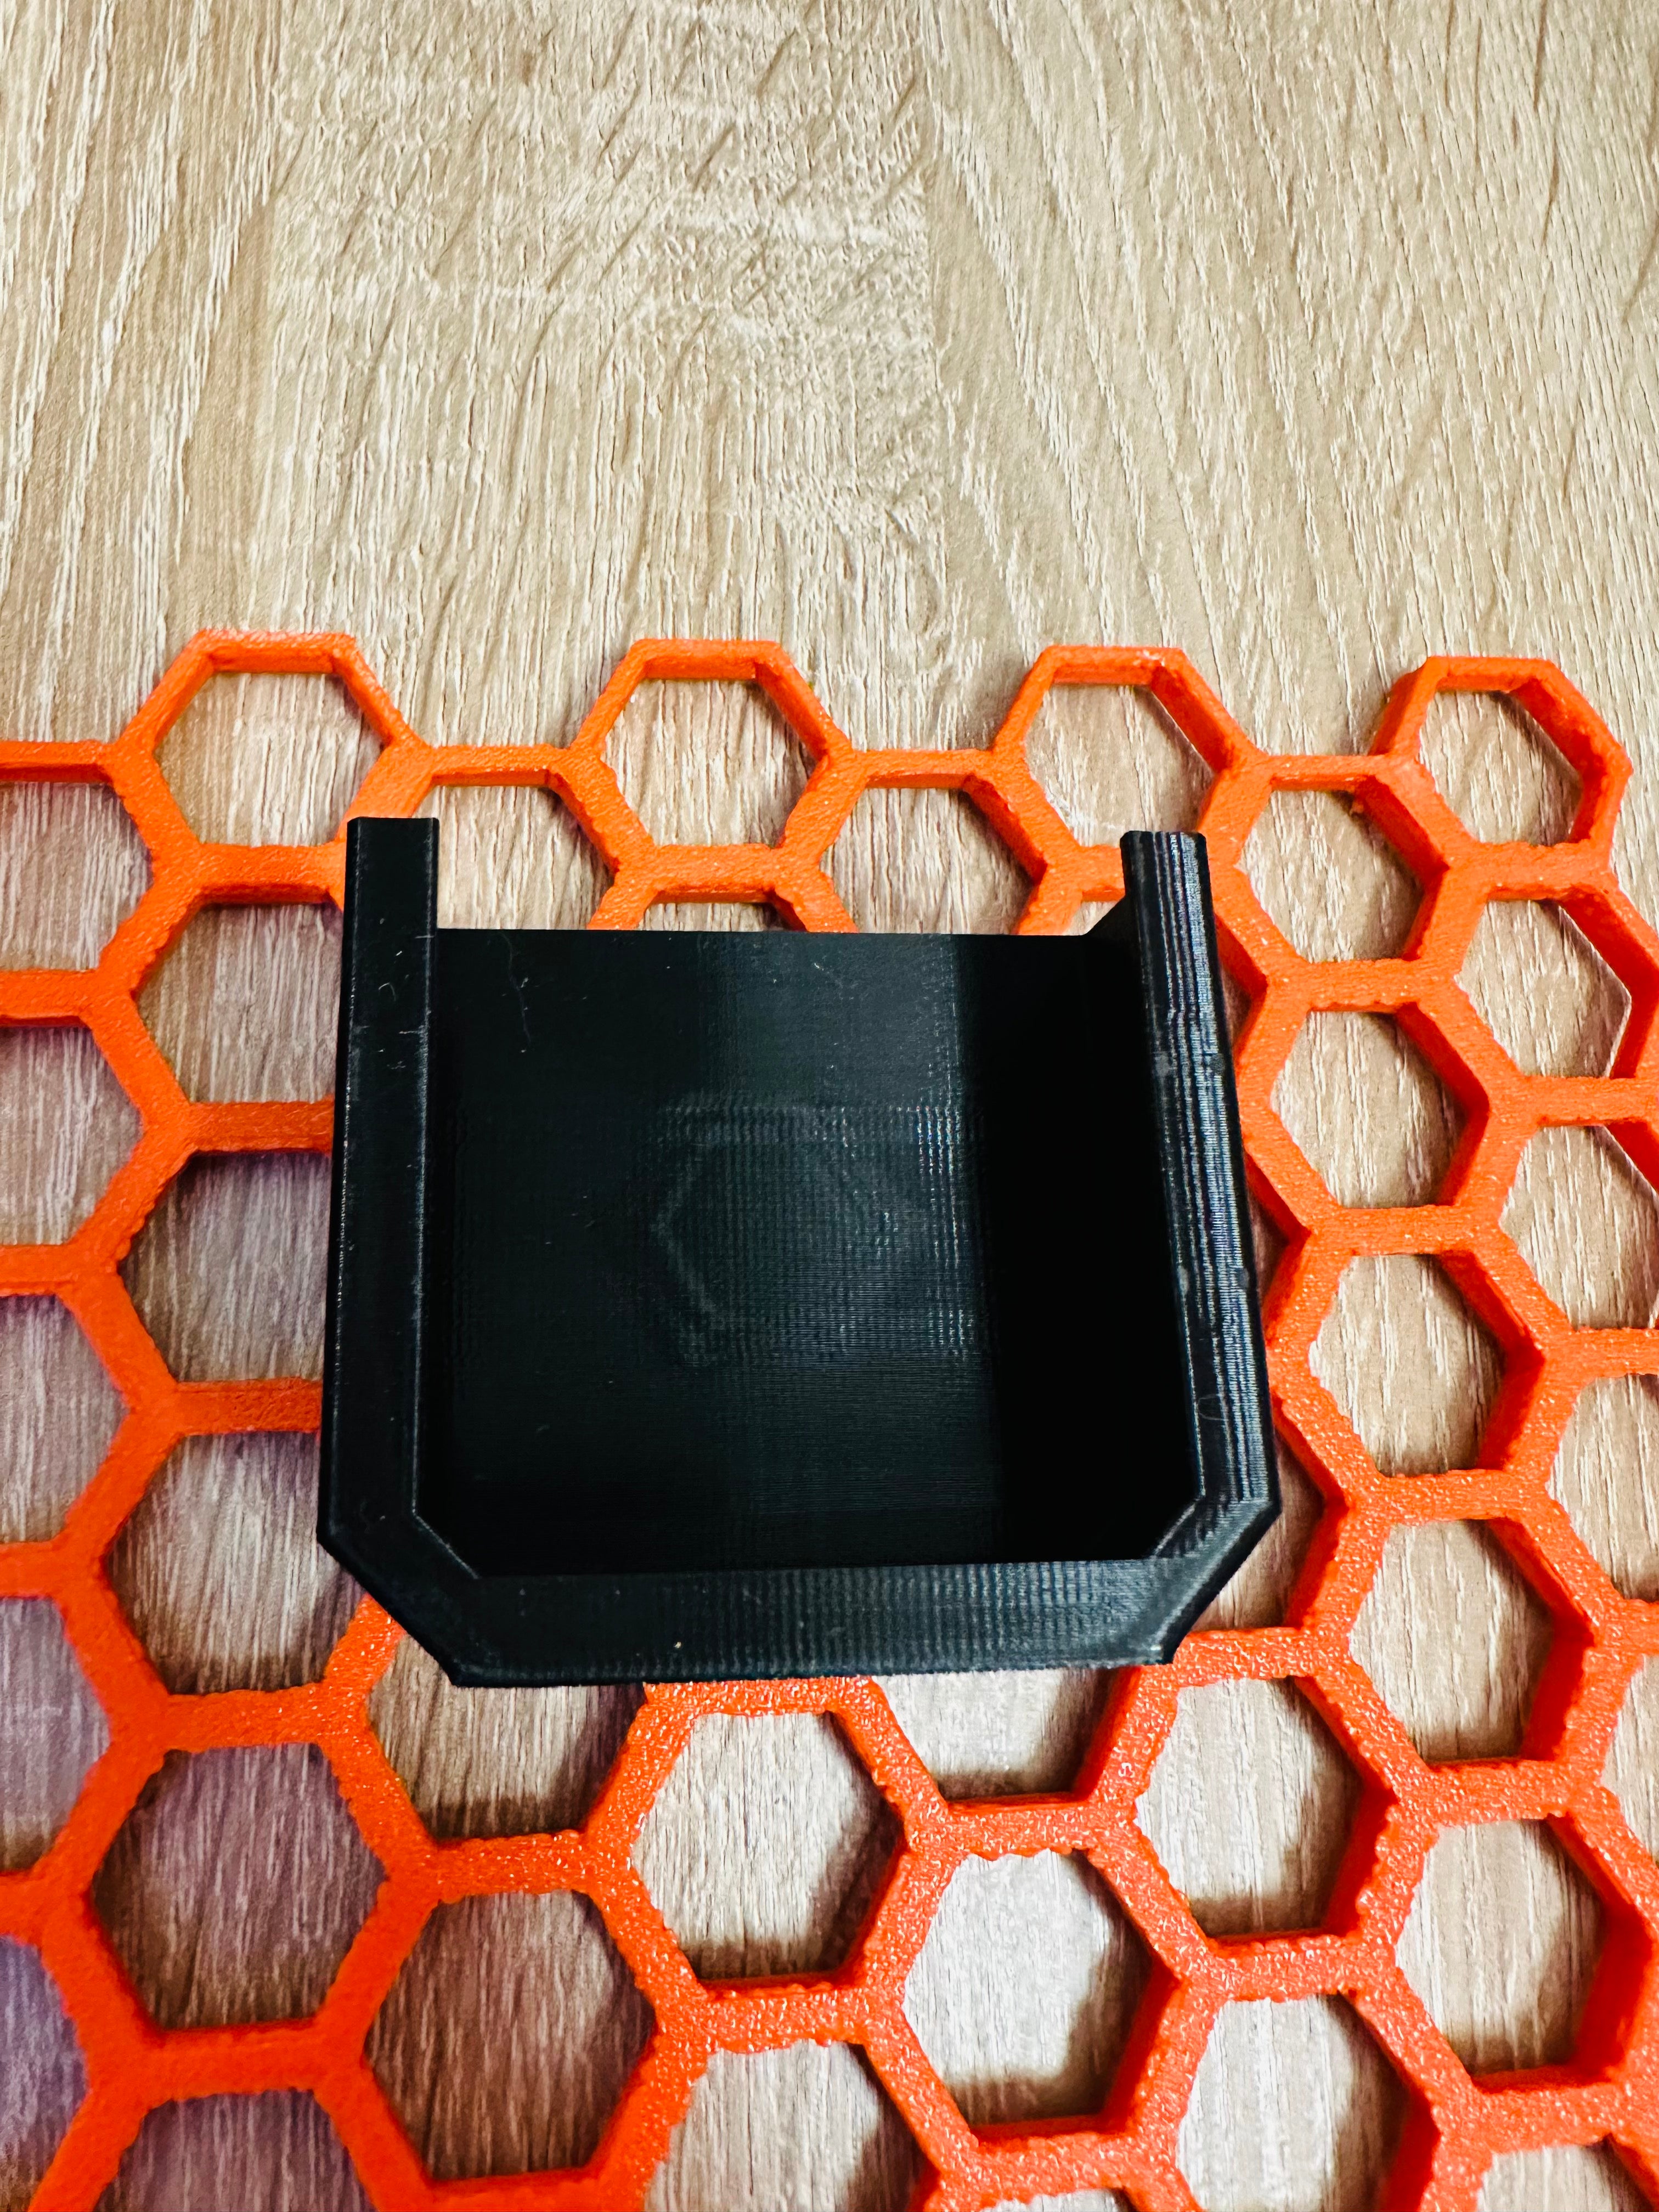 Apple Magic Mouse Hållare för Honeycomb väggpaneler